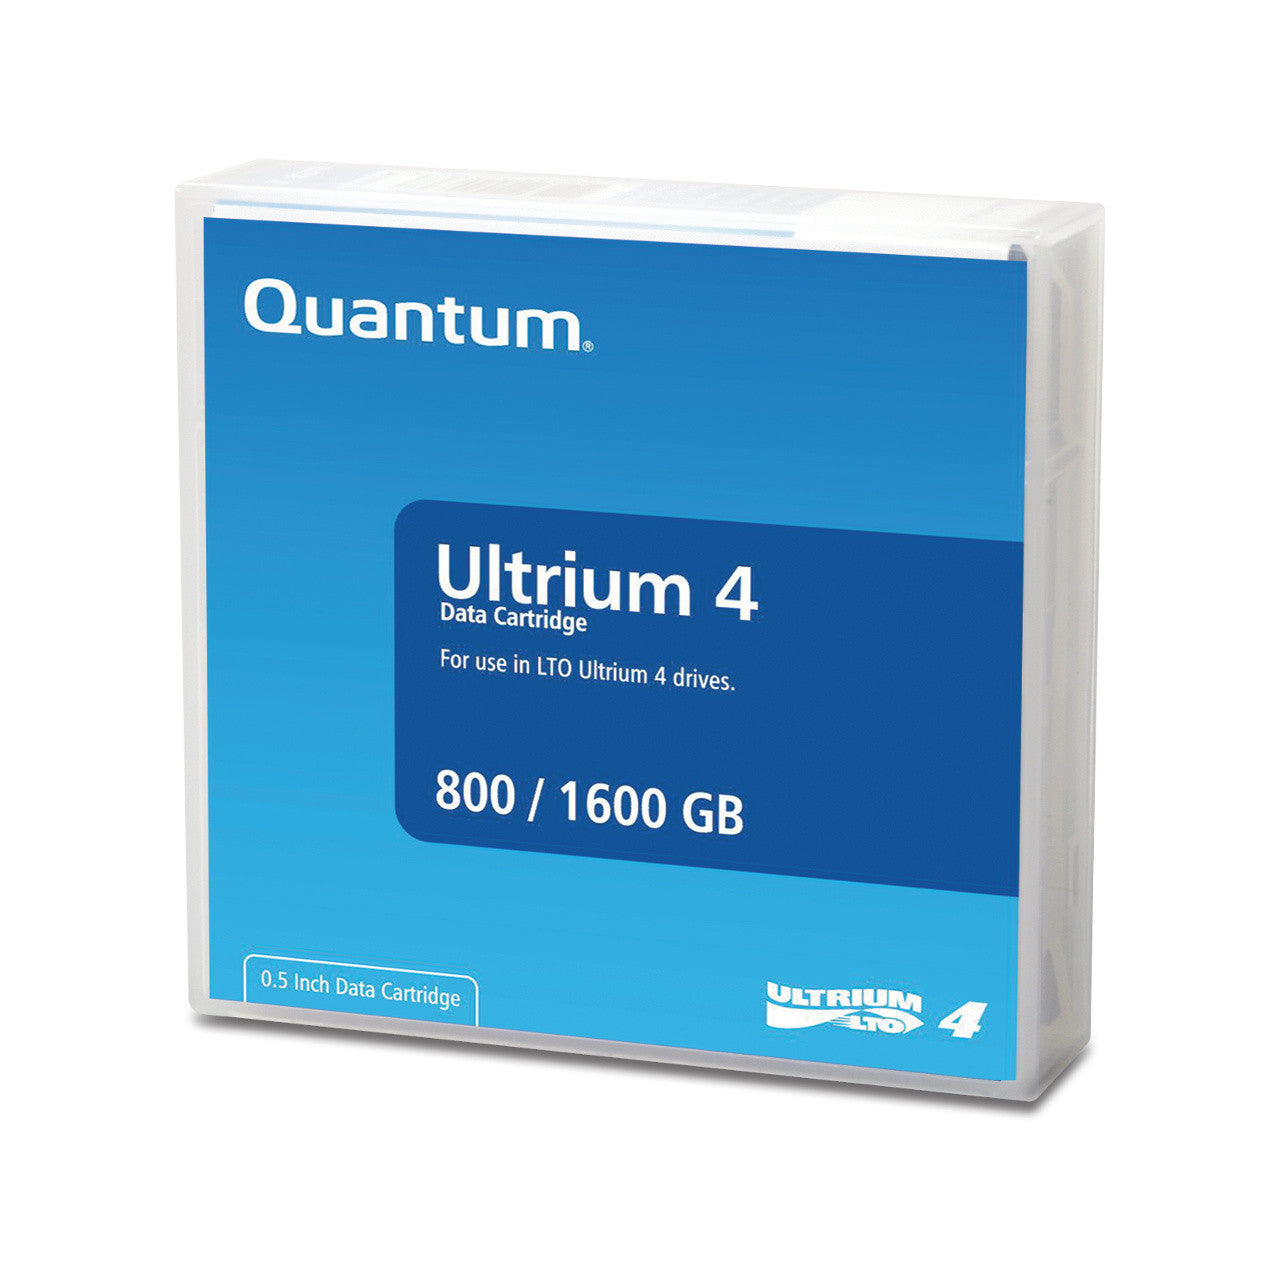 Case of 20 Quantum Ultrium LTO 4 800/1600 GB Data Tapes - MR-L4MQN